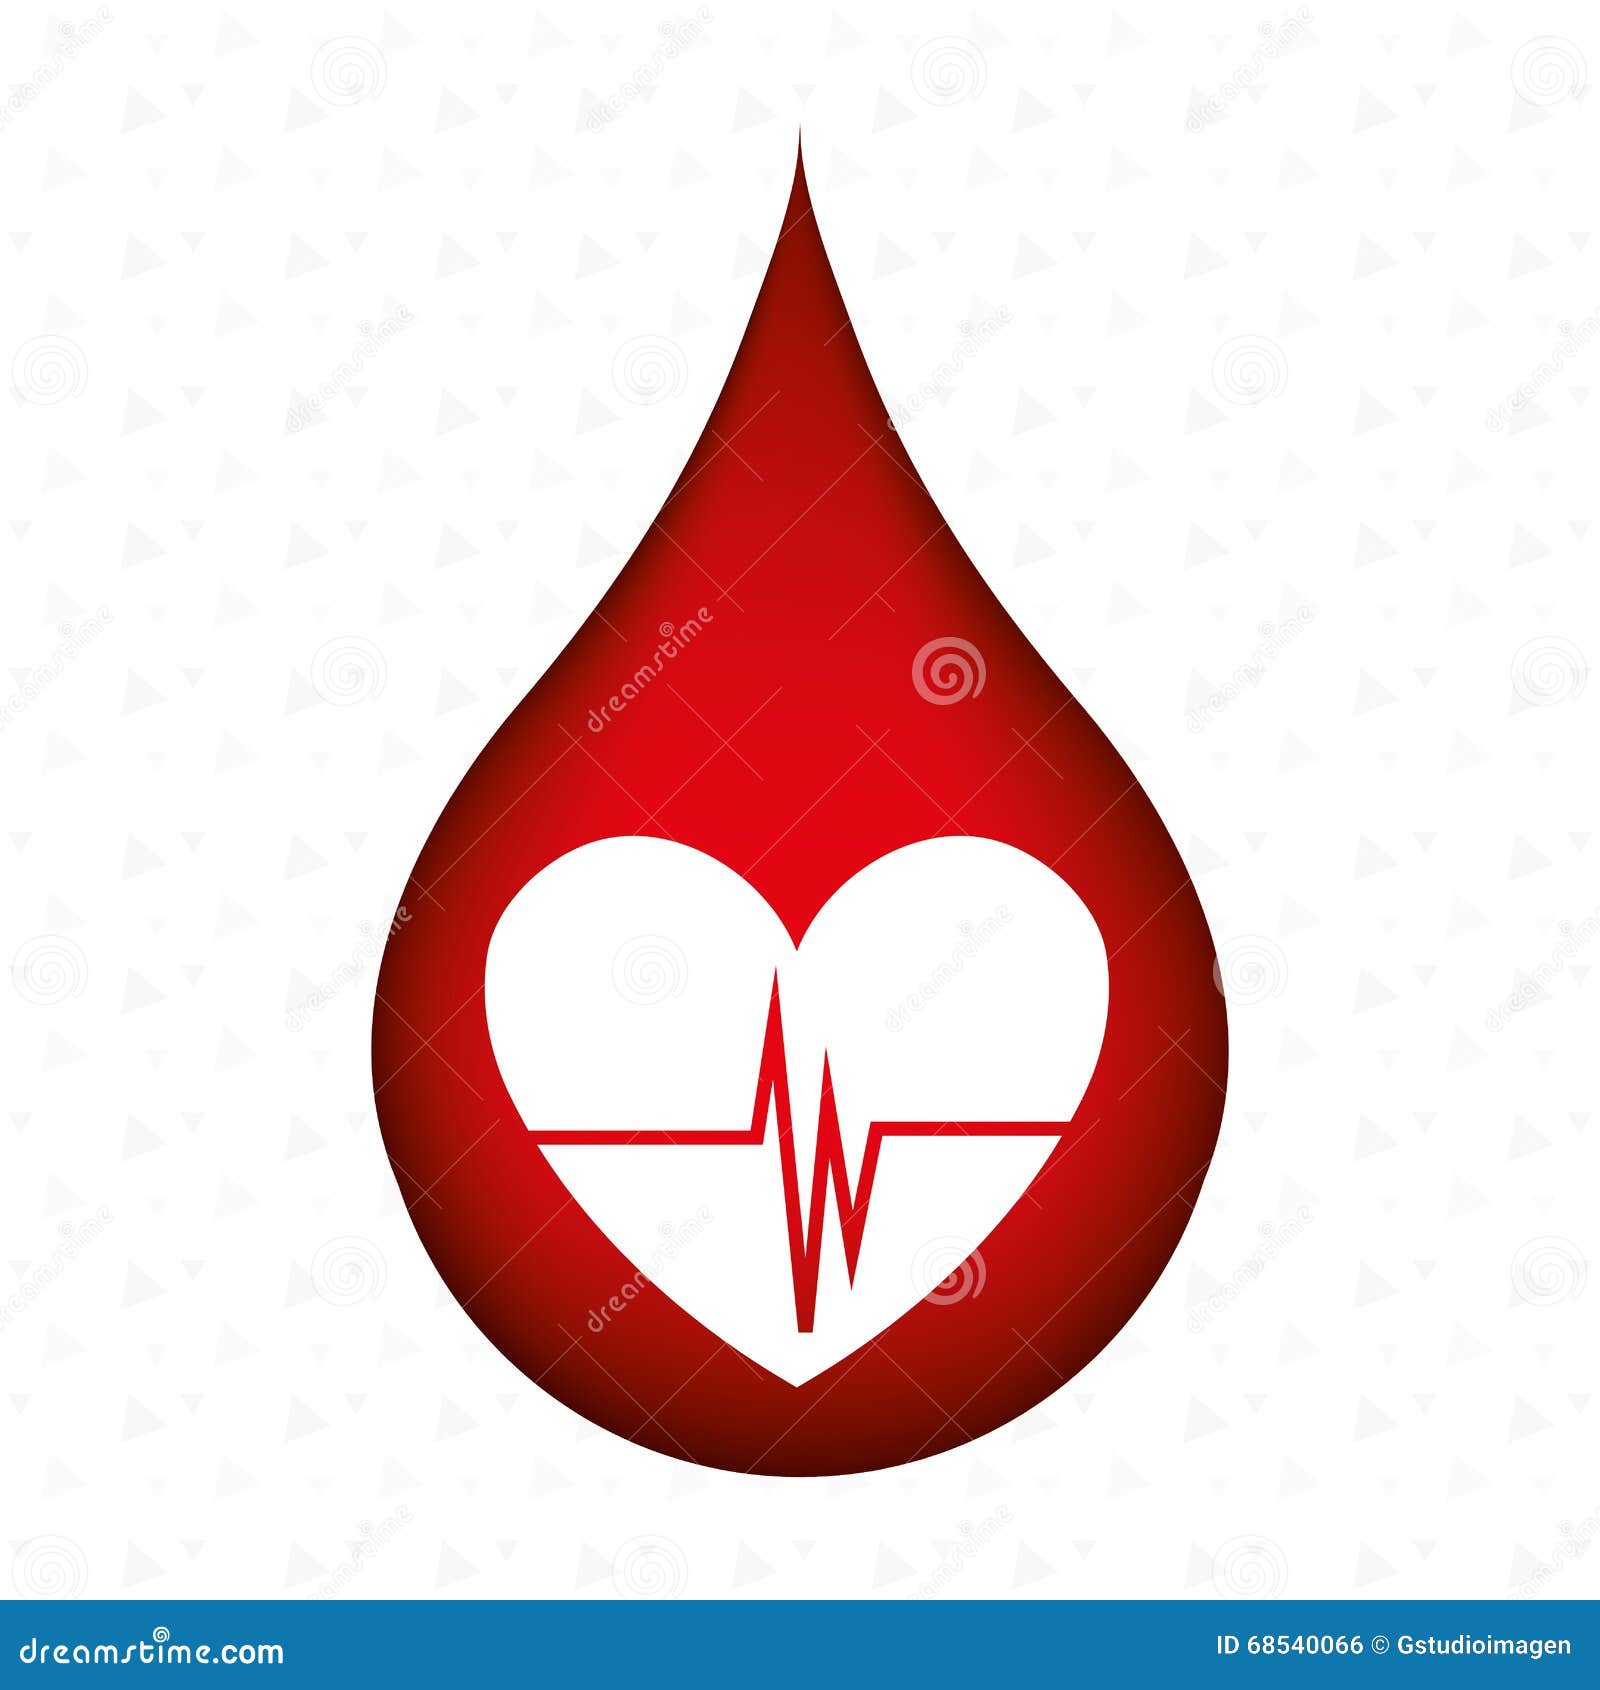 Символ донорства. Символ донора. Капля крови донорство. Донорство крови эмблема. Значок капля крови.